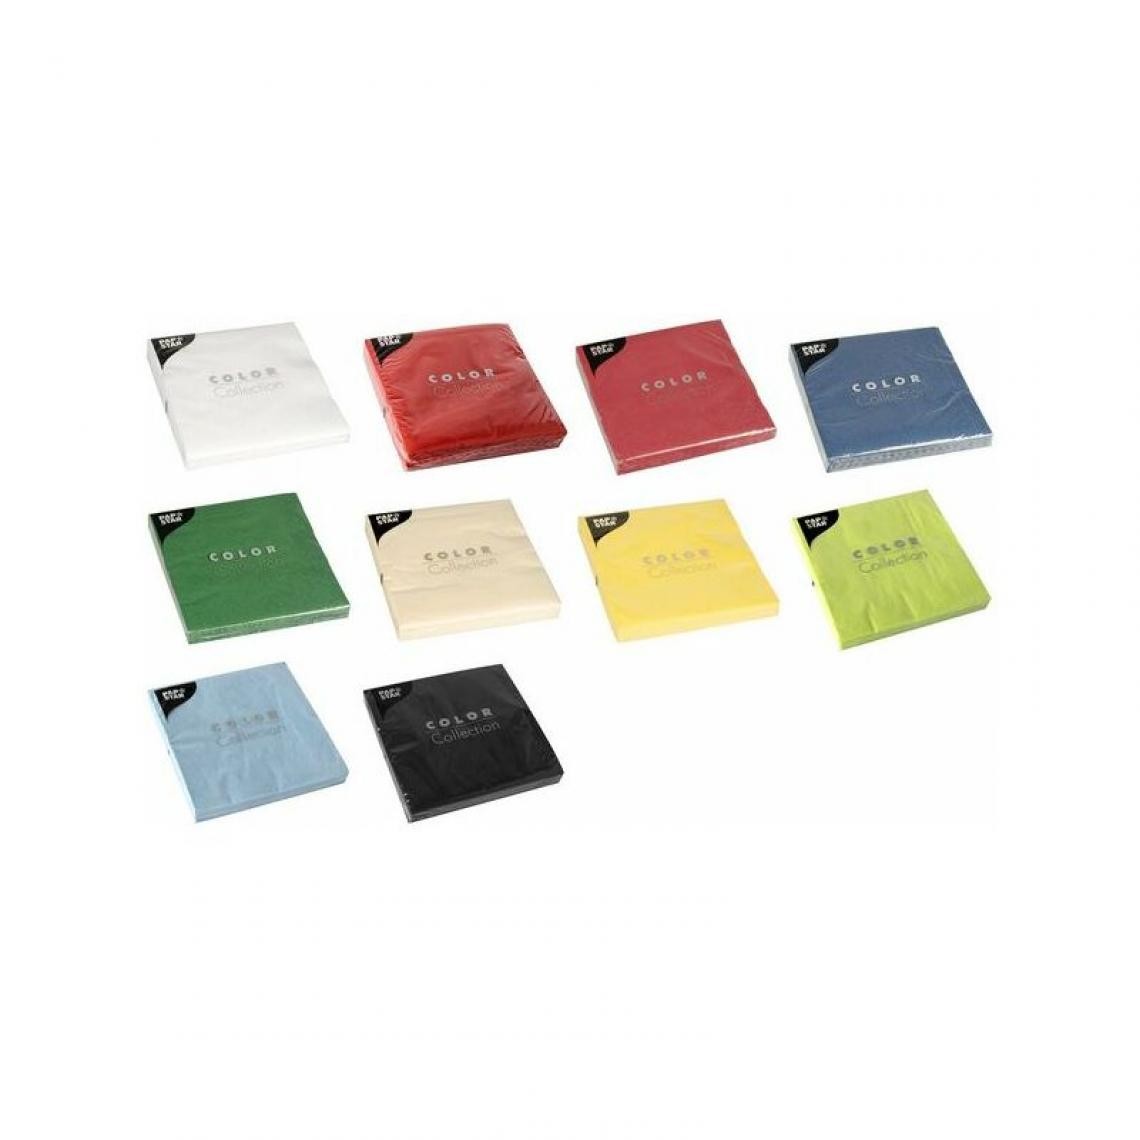 PAPSTAR - PAPSTAR Serviettes, 330 x 330 mm, 3 couches, crème () - Kits créatifs